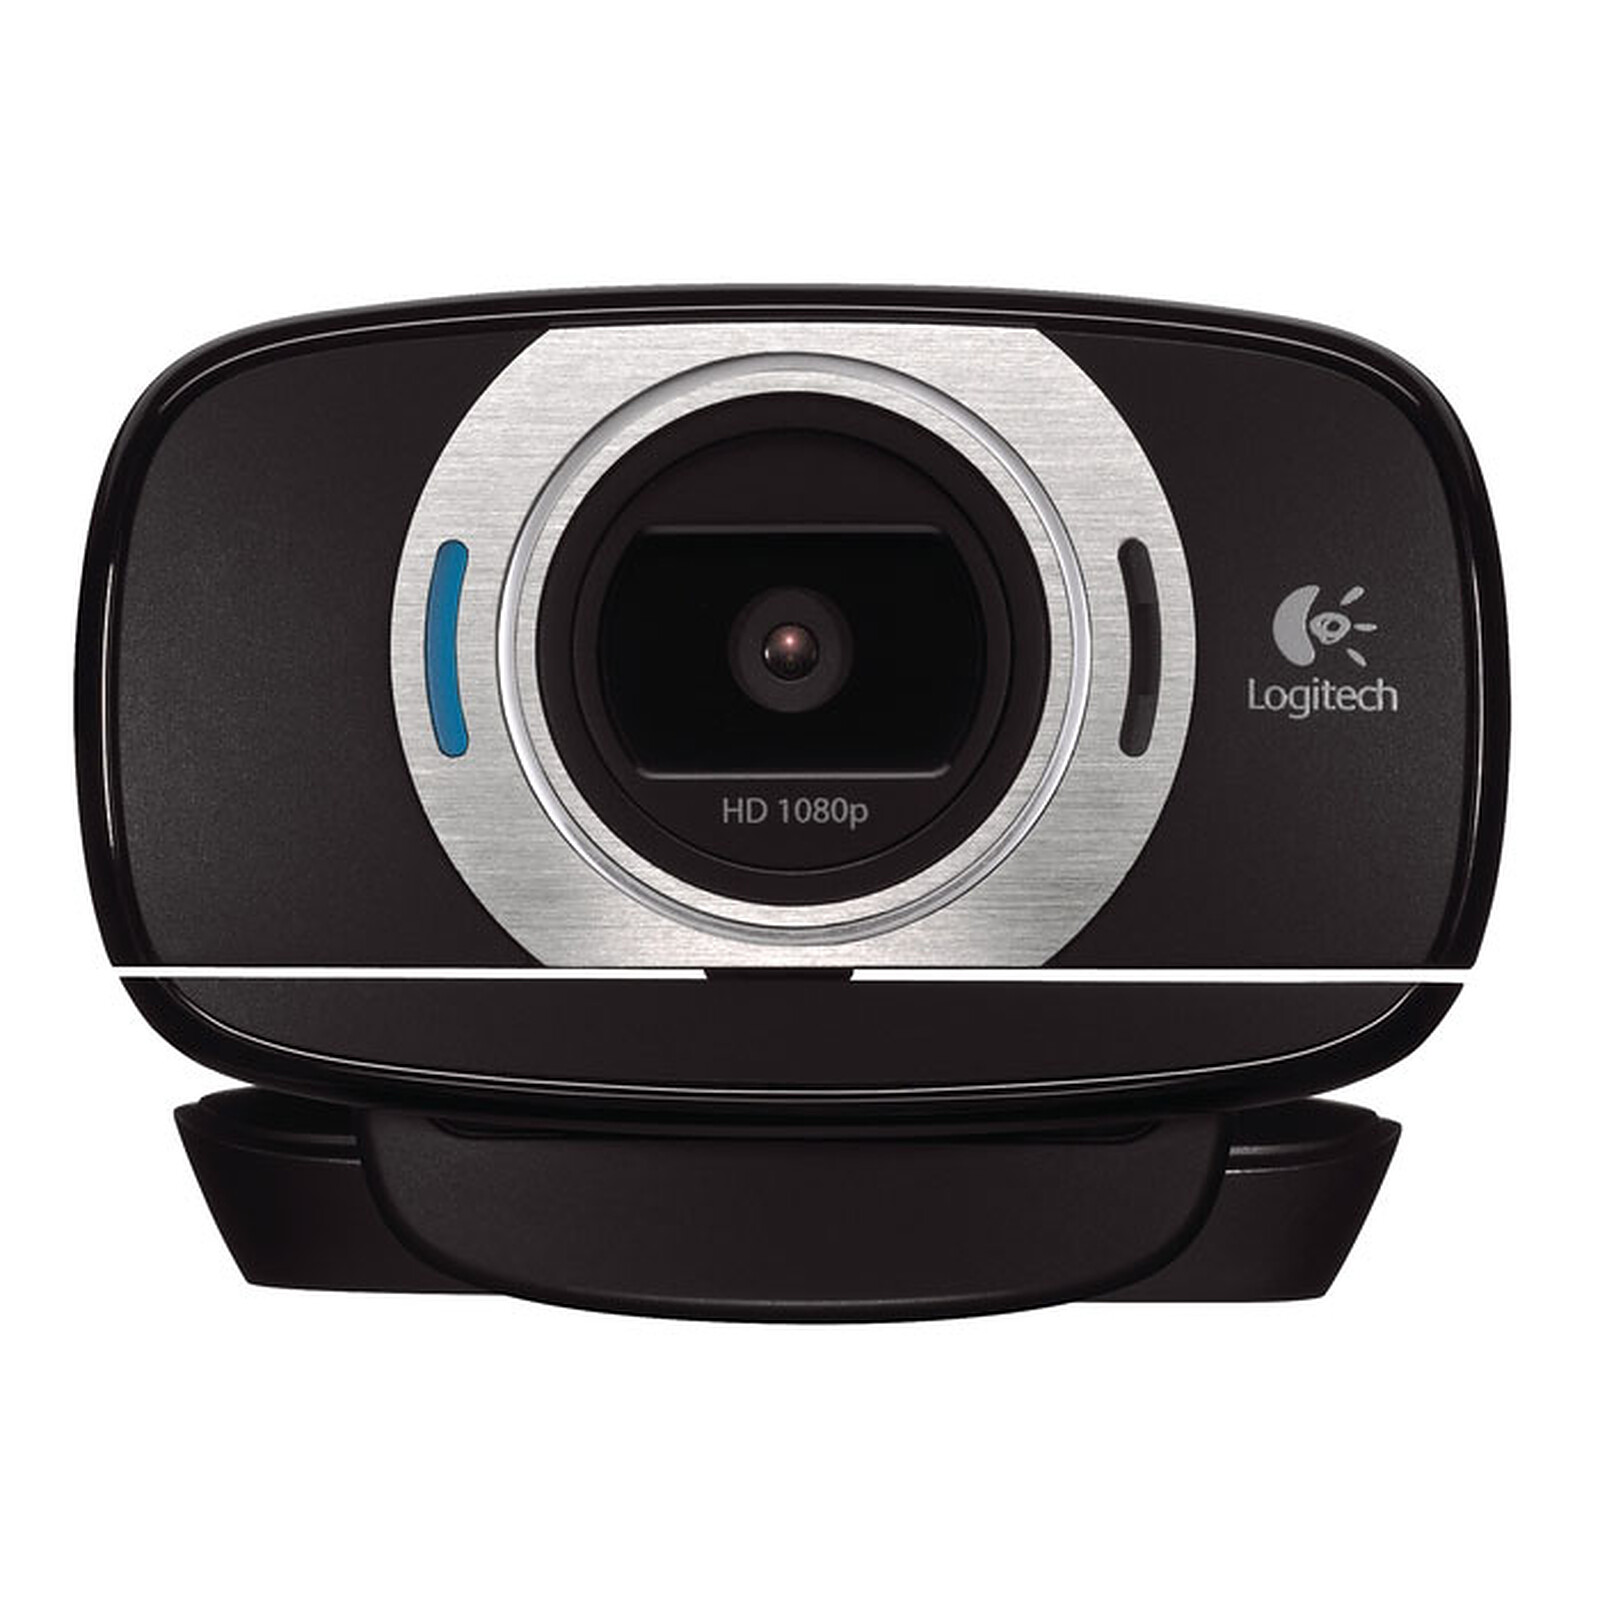 Webcam Logitech C270 avec micro intégré